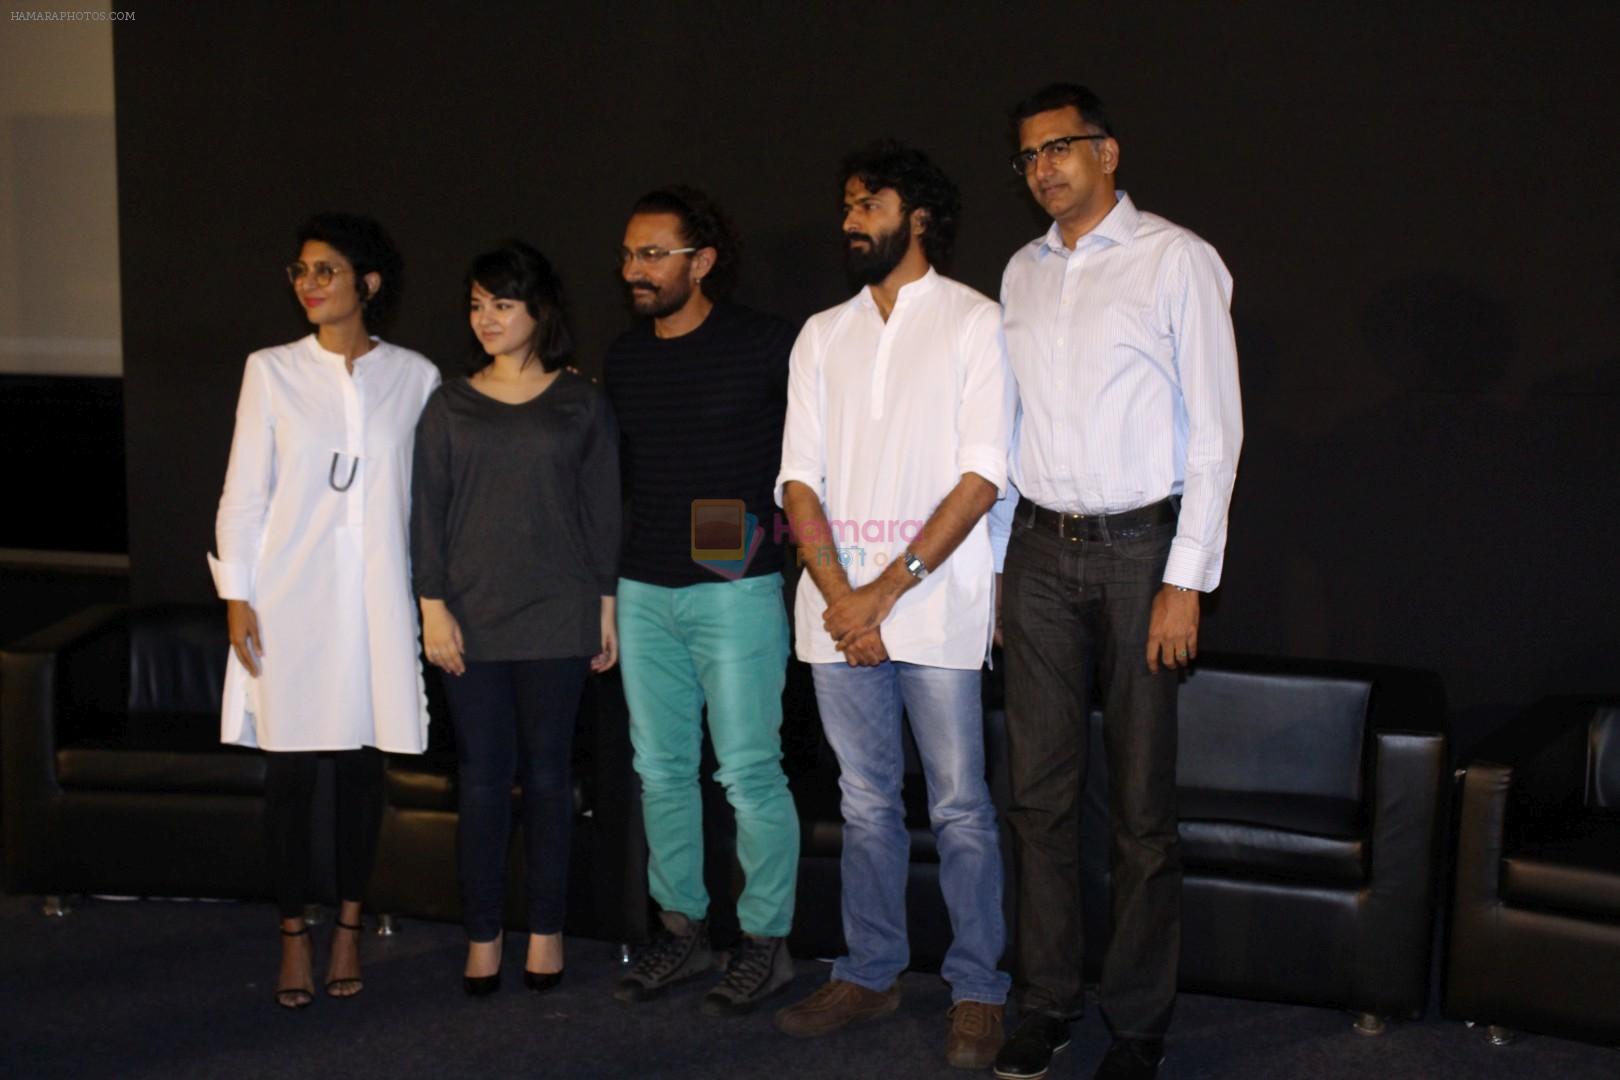 Aamir Khan, Kiran Rao, Zaira Wasim, Advait Chandan at Trailer Launch Of Film Secret Superstar on 2nd Aug 2017